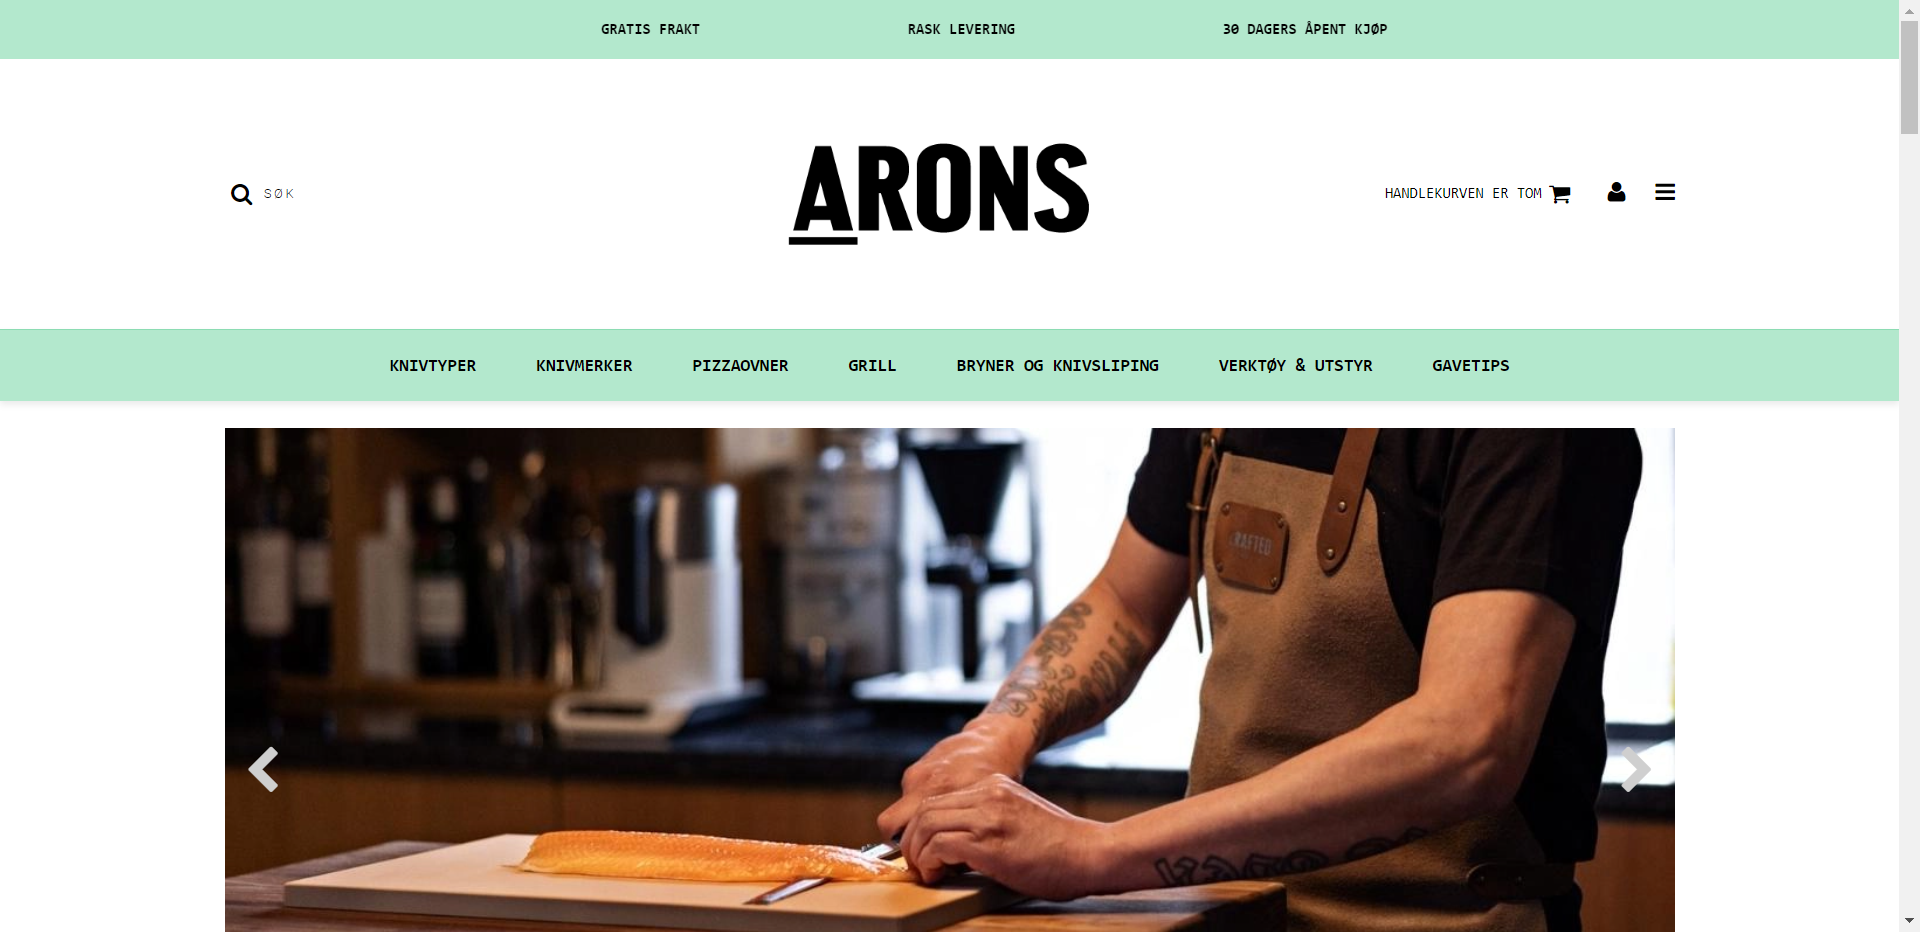 Arons nettbutikk - Les omtalen av nettbutikken